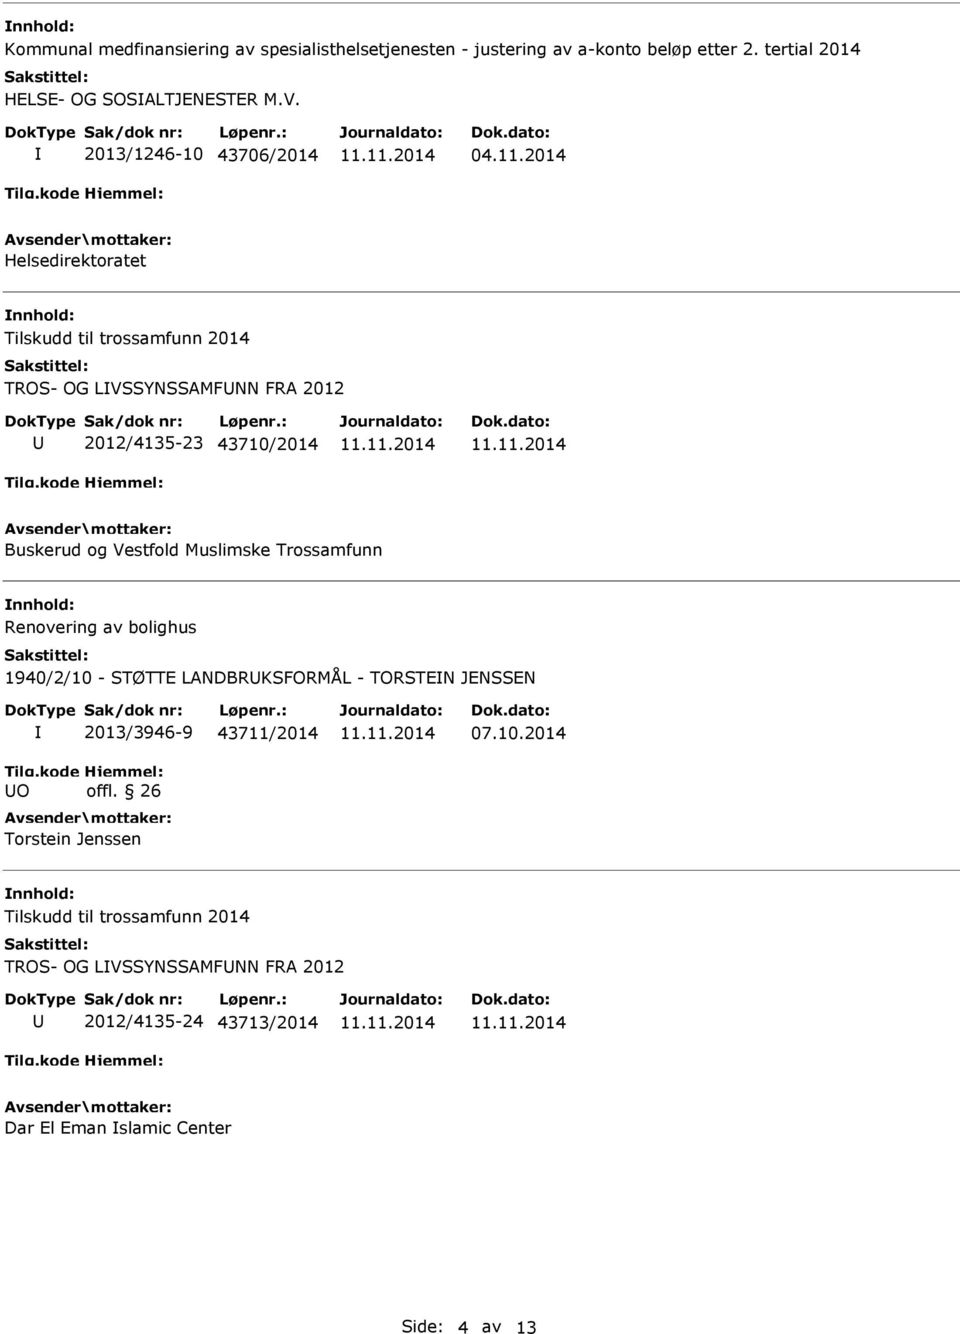 2014 Helsedirektoratet TROS- OG LVSSYNSSAMFNN FRA 2012 2012/4135-23 43710/2014 Buskerud og Vestfold Muslimske Trossamfunn